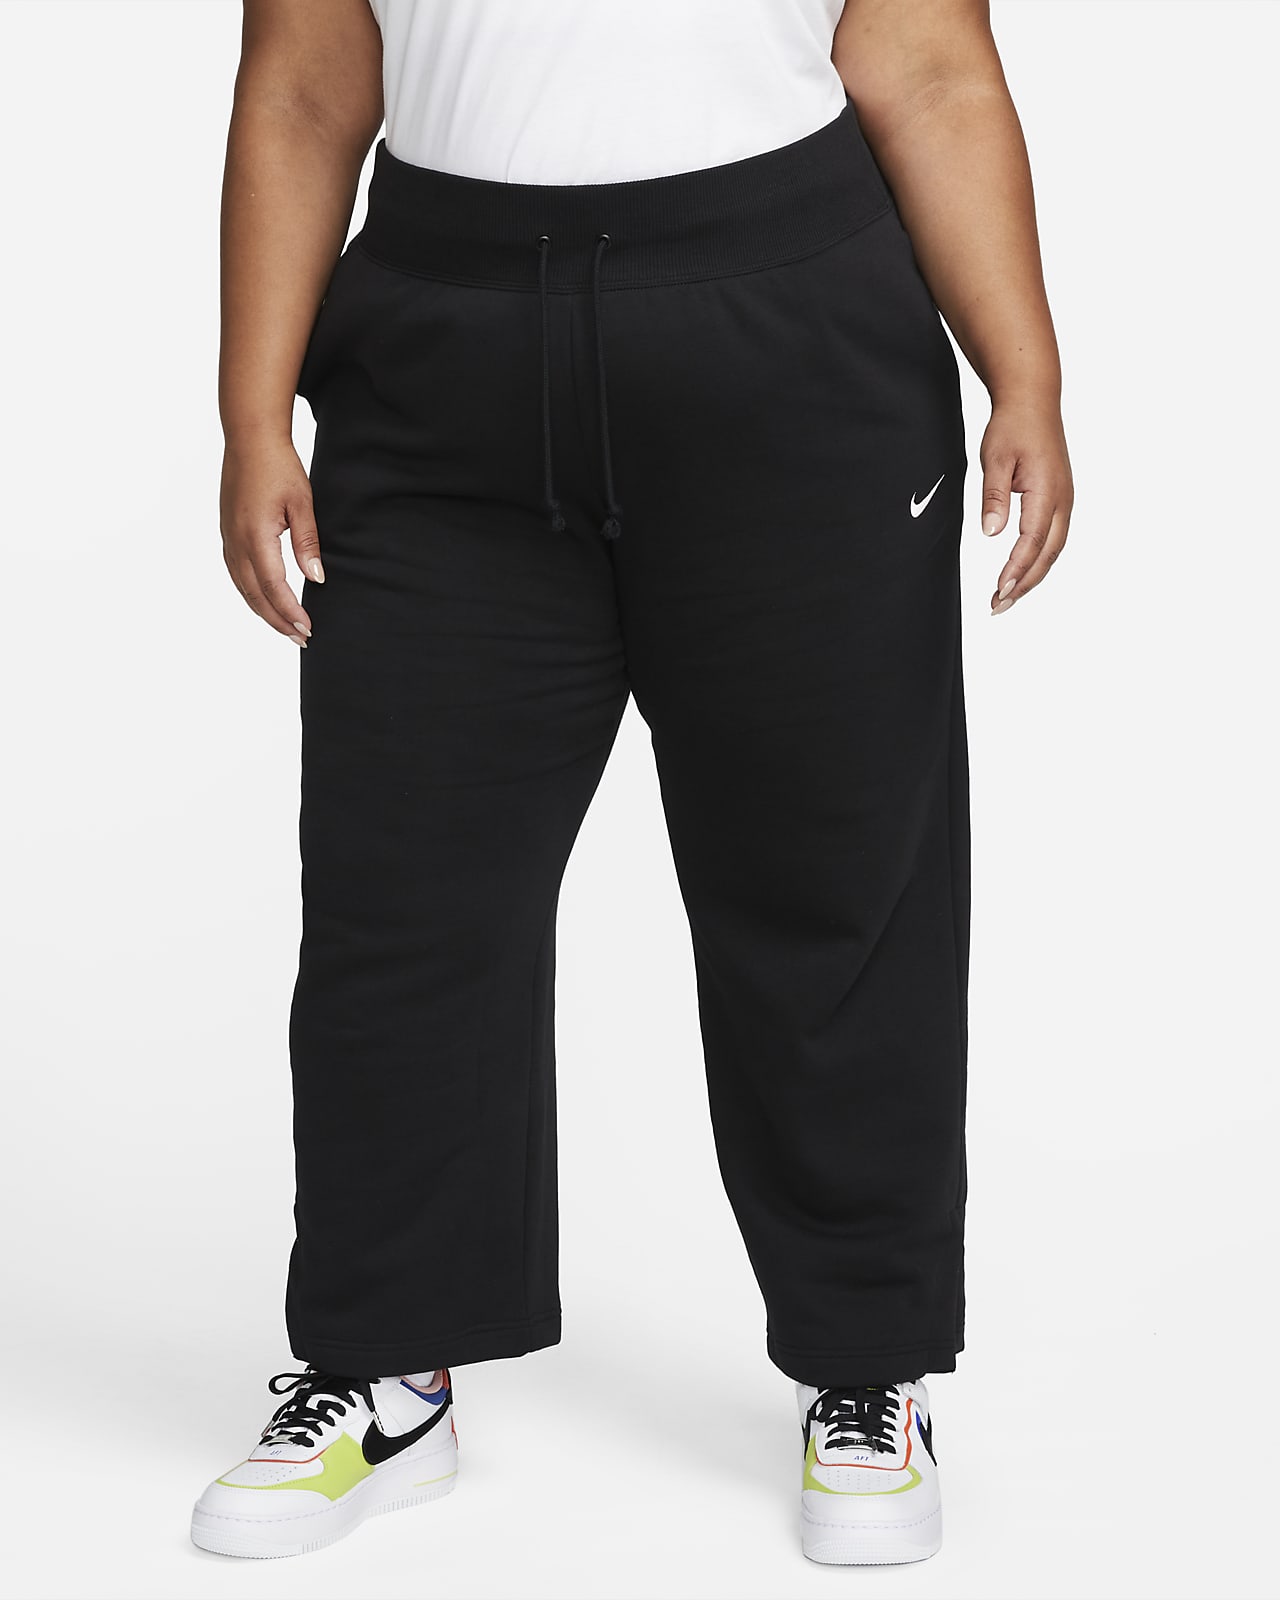 Γυναικείο ψηλόμεσο παντελόνι φόρμας με φαρδιά μπατζάκια Nike Sportswear Phoenix Fleece (μεγάλα μεγέθη)